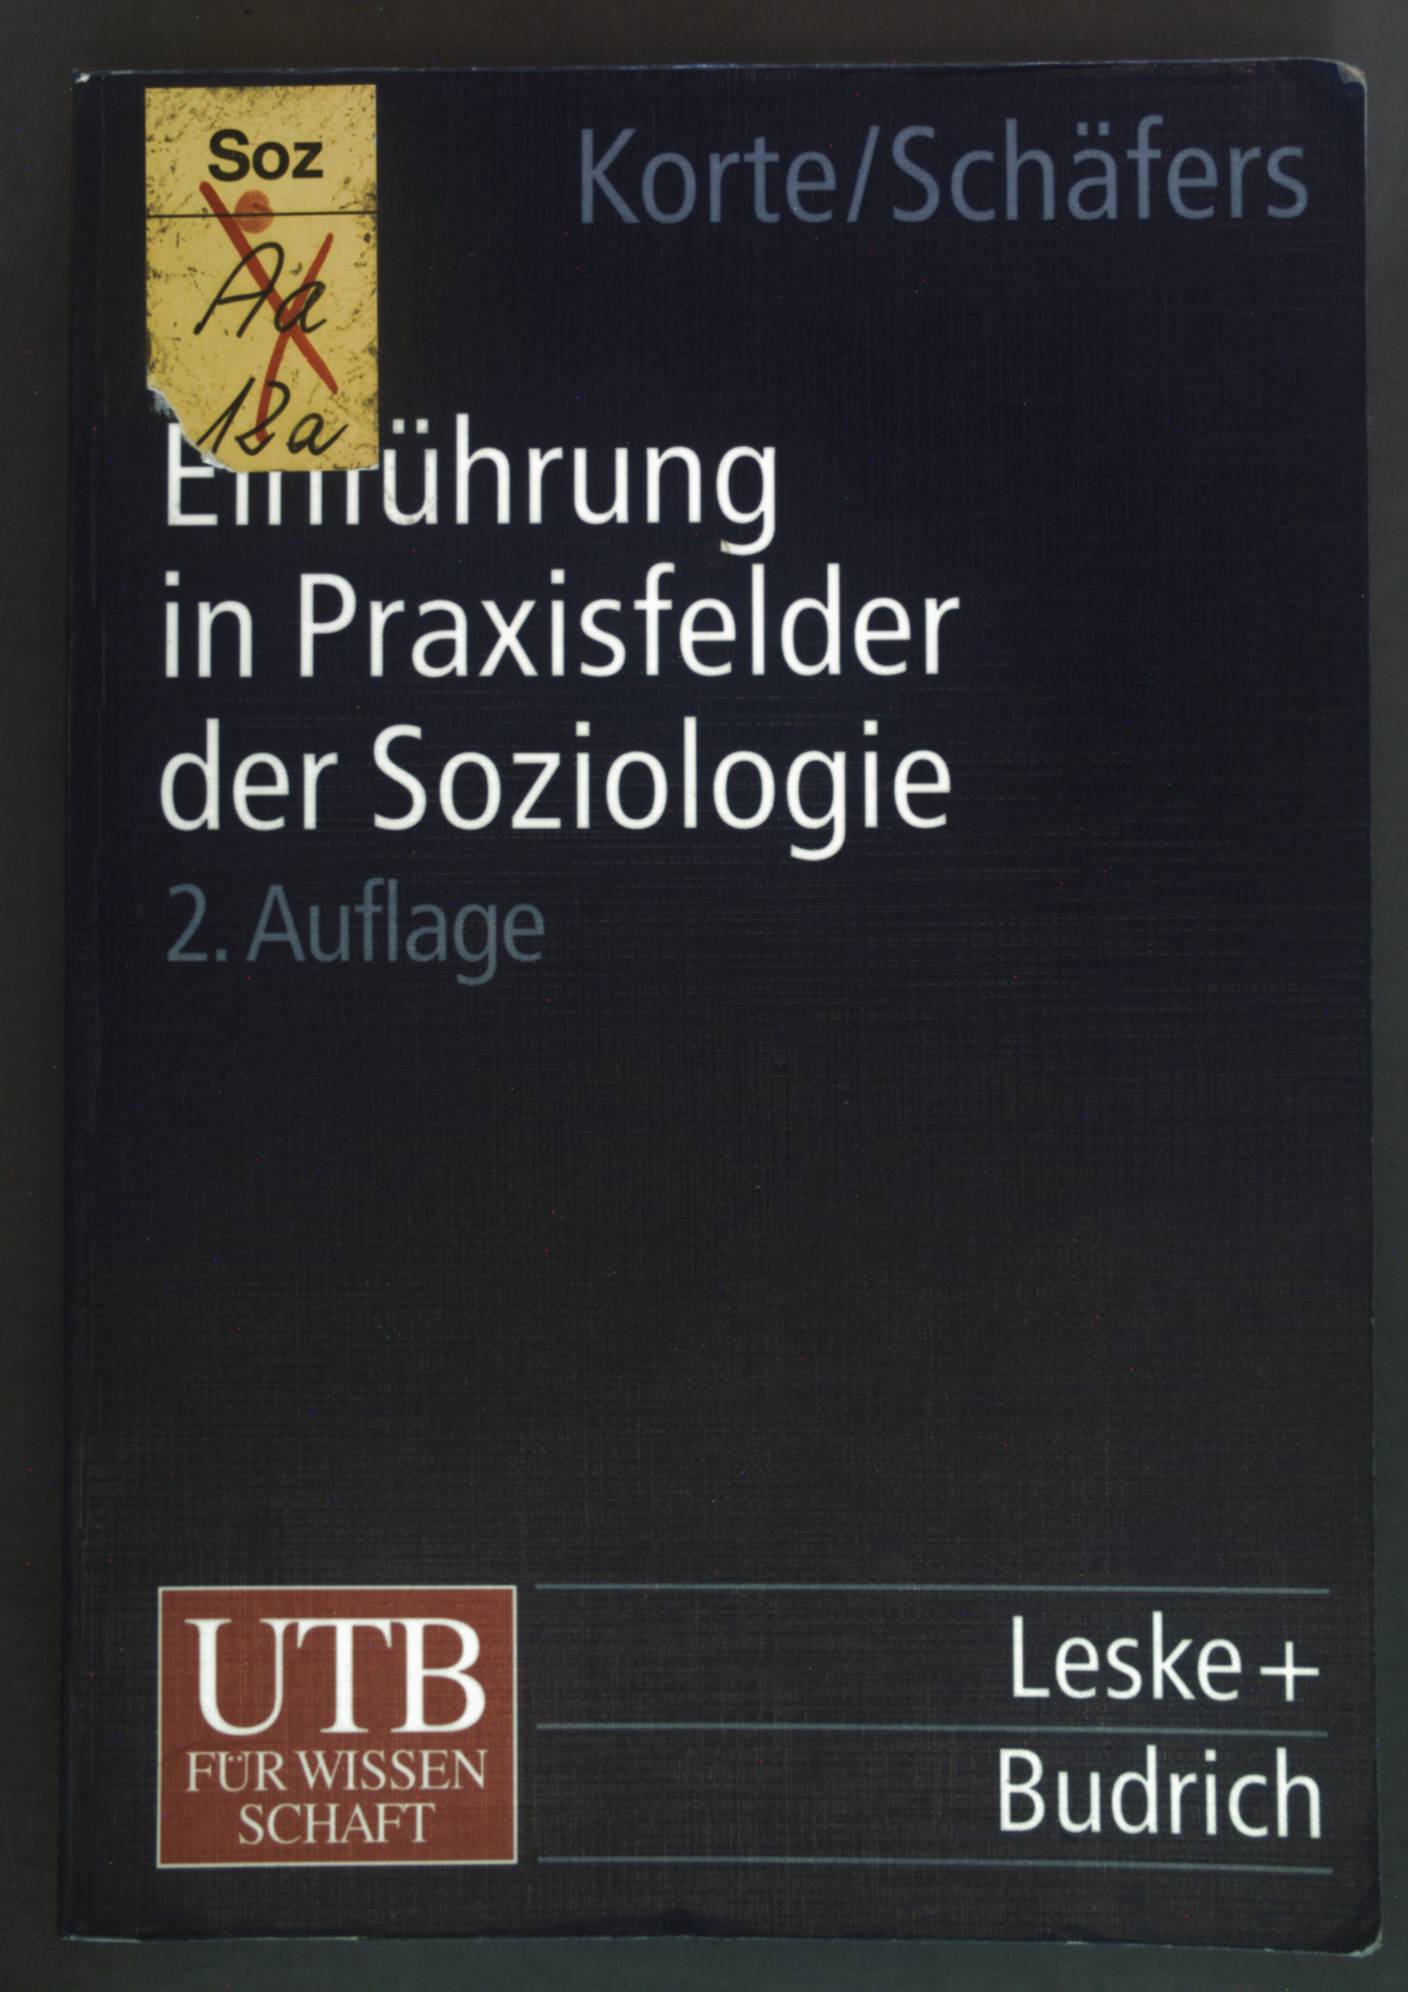 Einführung in Praxisfelder der Soziologie. Einführungskurs Soziologie ; Bd. 4; UTB ; 8071. - Korte, Hermann